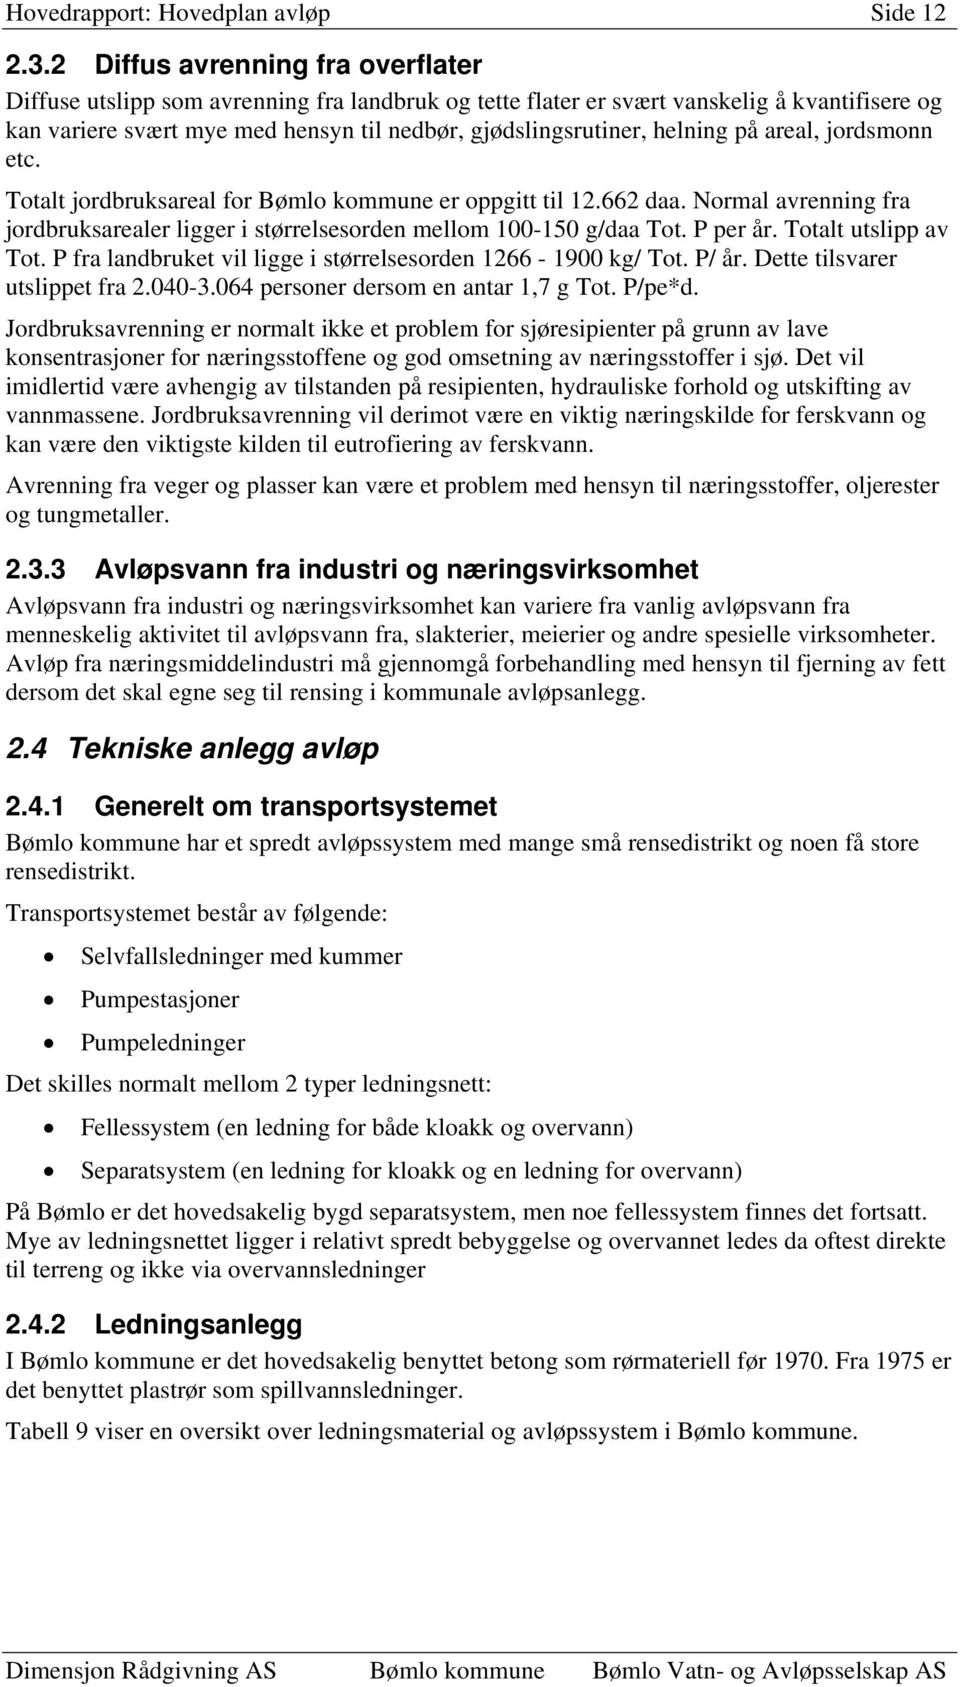 helning på areal, jordsmonn etc. Totalt jordbruksareal for Bømlo kommune er oppgitt til 12.662 daa. Normal avrenning fra jordbruksarealer ligger i størrelsesorden mellom 100-150 g/daa Tot. P per år.